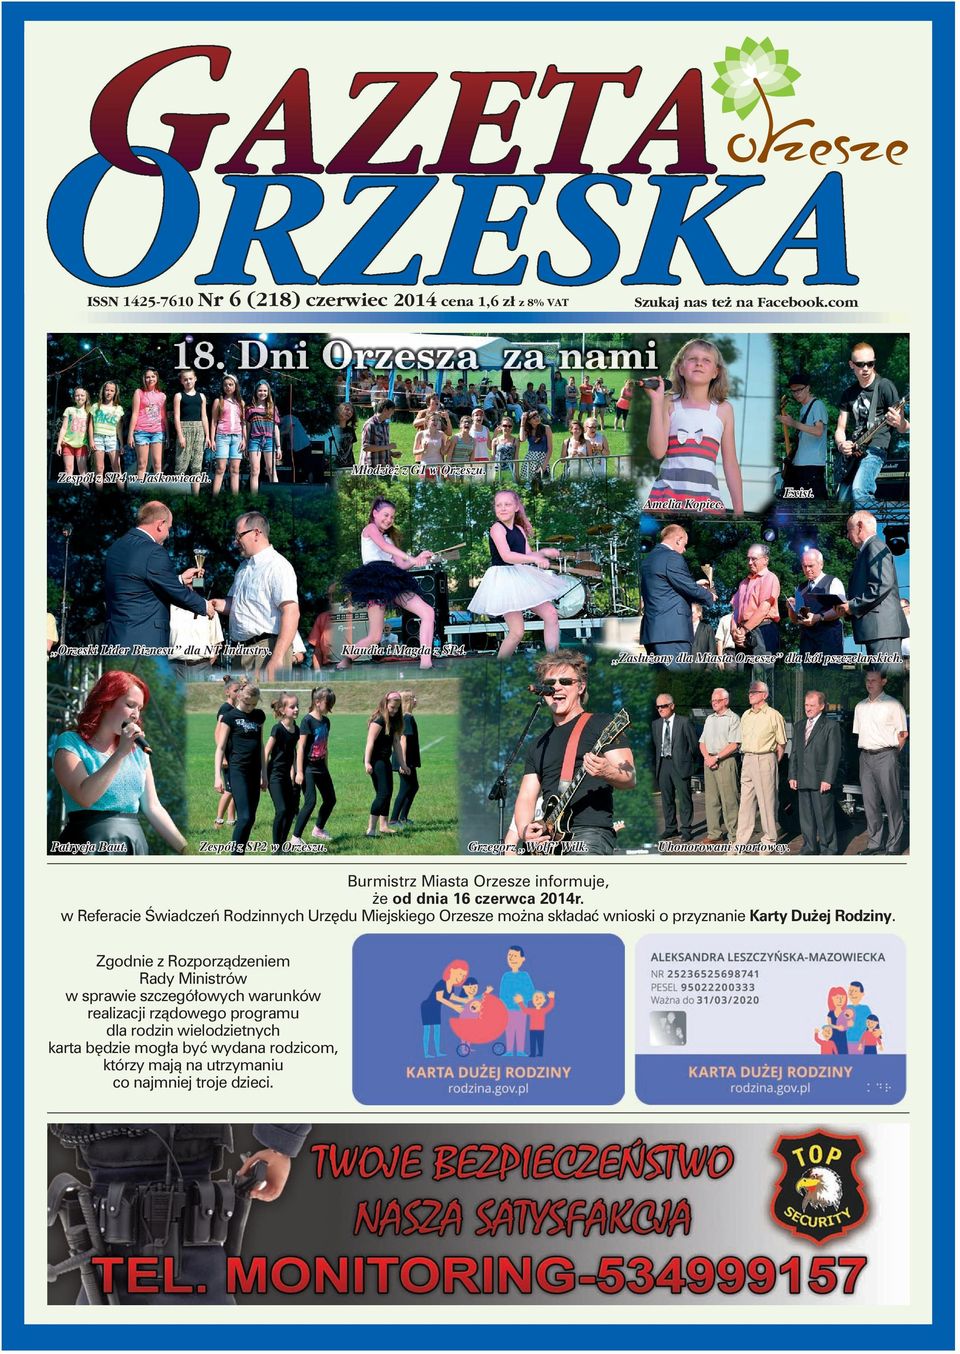 Uhonorowani sportowcy. Burmistrz Miasta Orzesze informuje, że od dnia 16 czerwca 2014r.